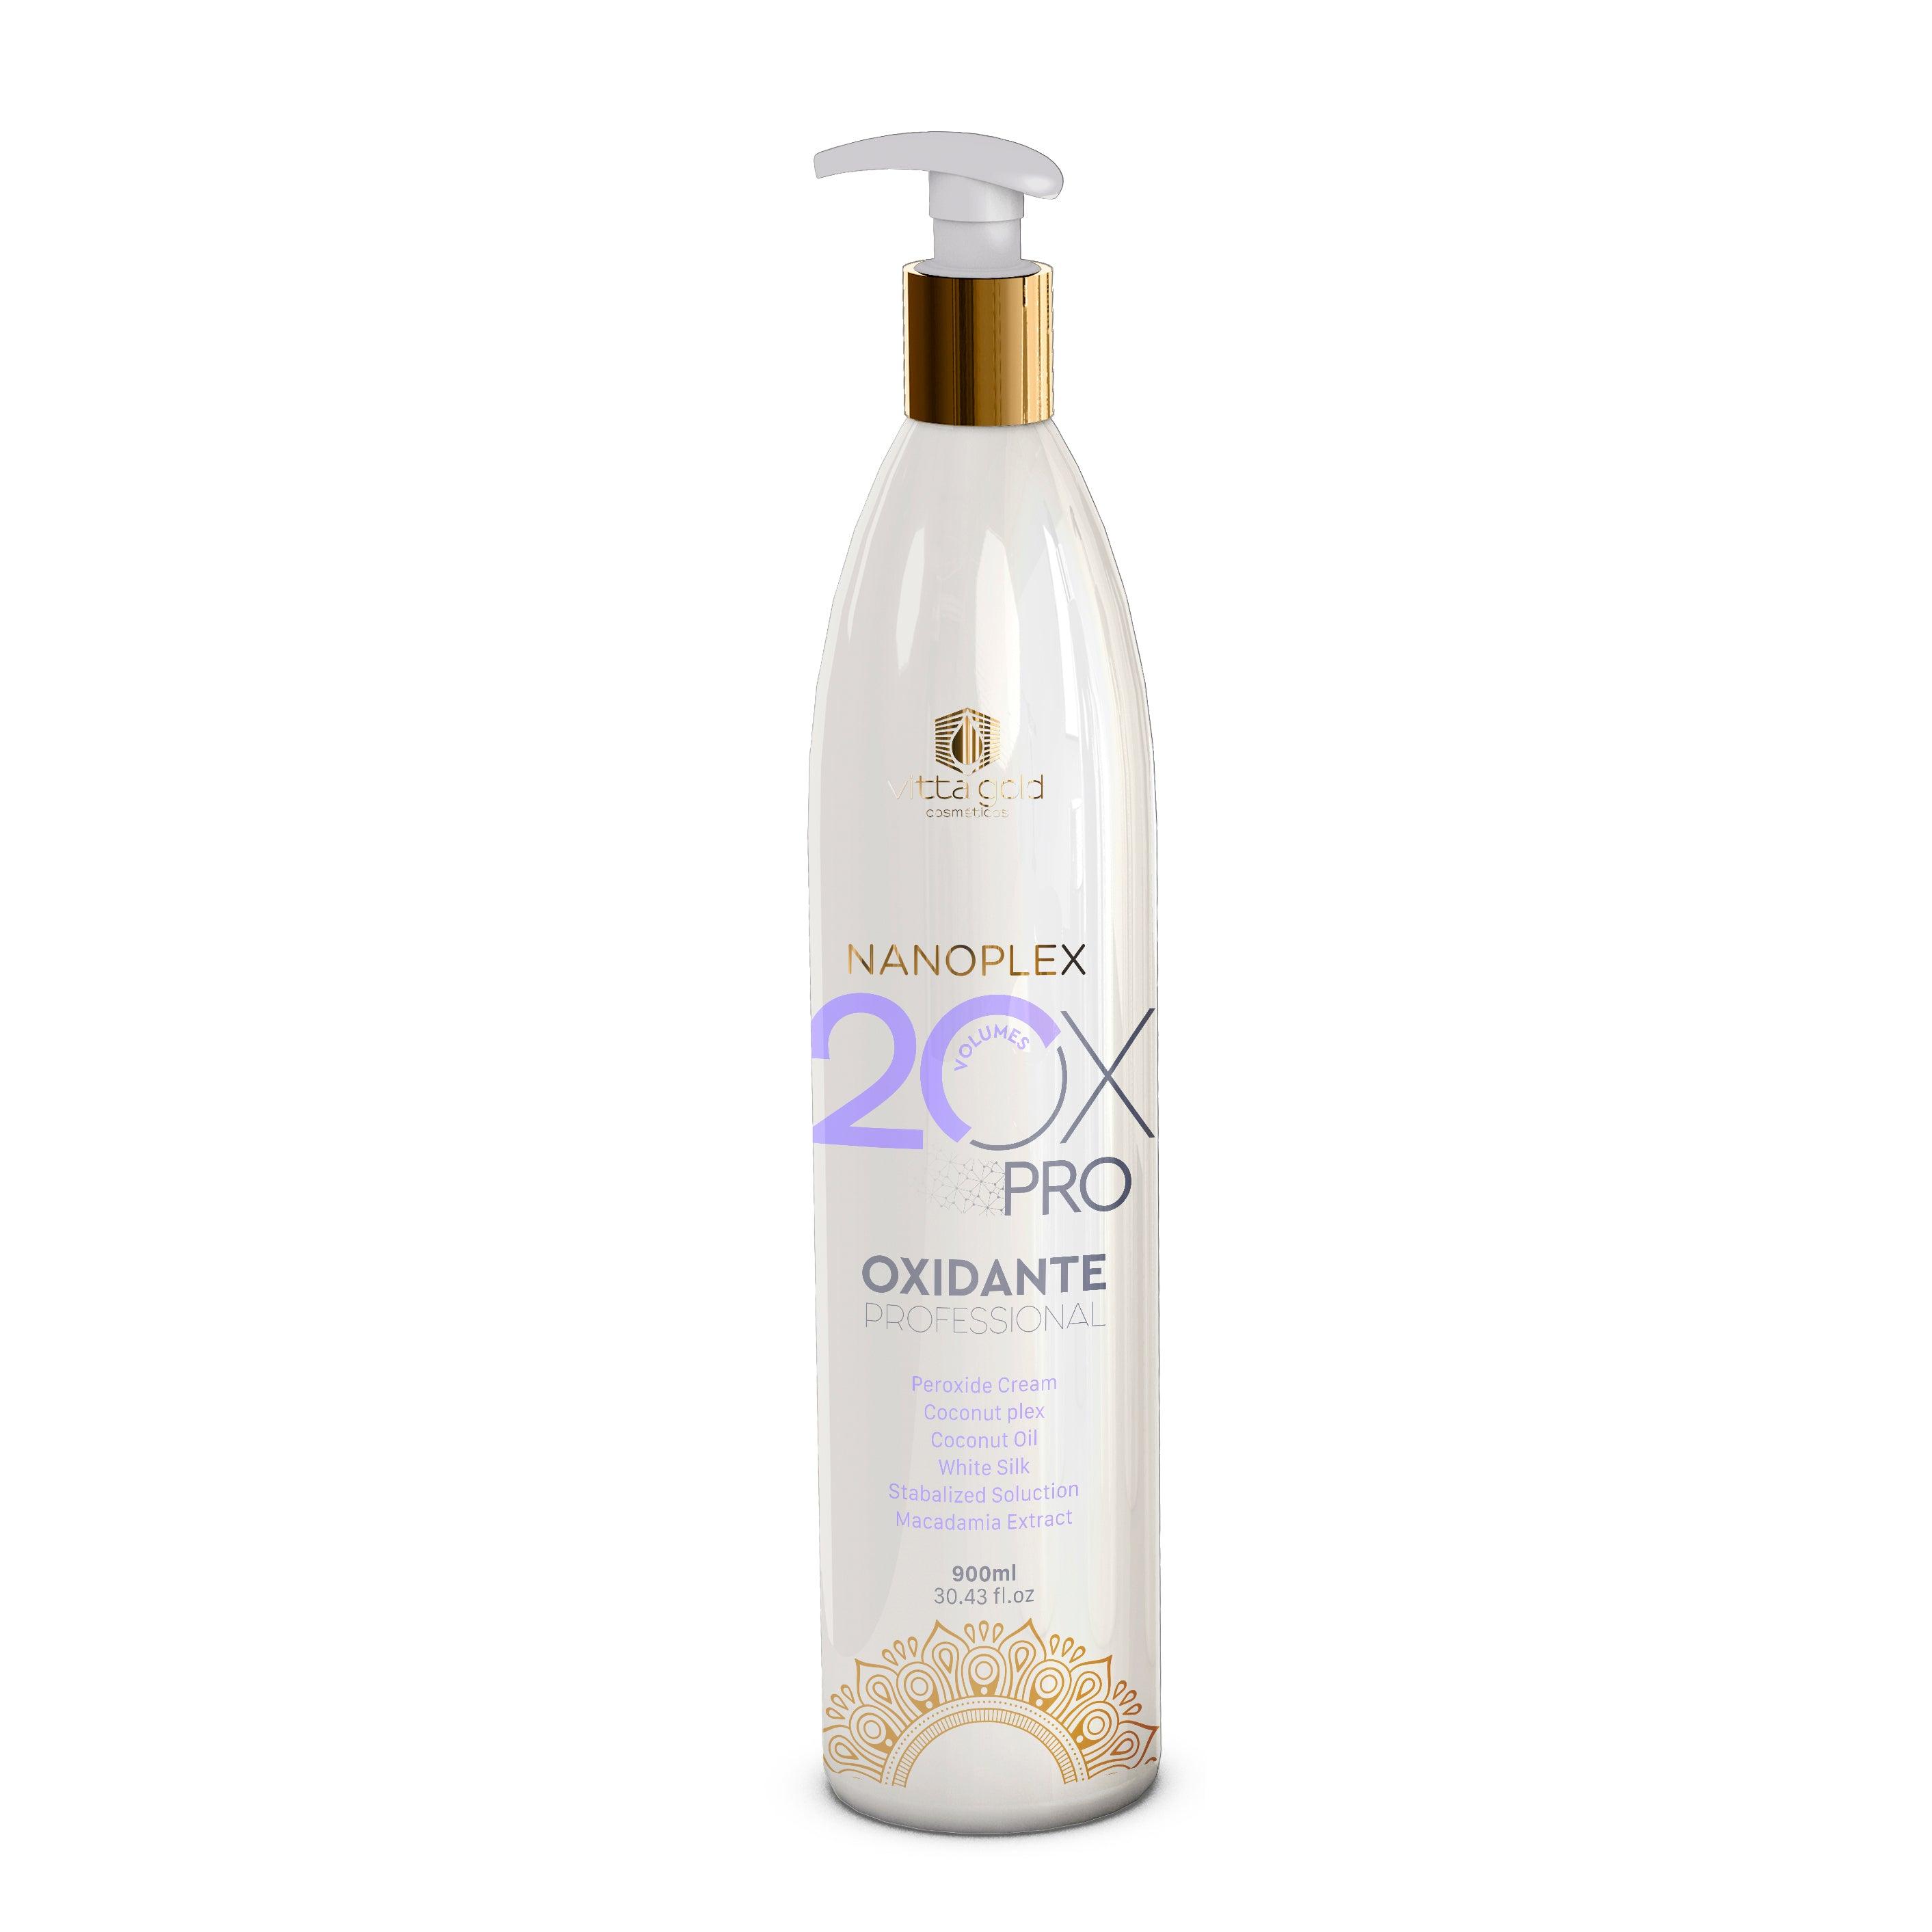 Nanoplex Peroxyde Crème OX - 20vol. Crème professionnelle oxydante pour les cheveux -Proxide-Vitta Gold